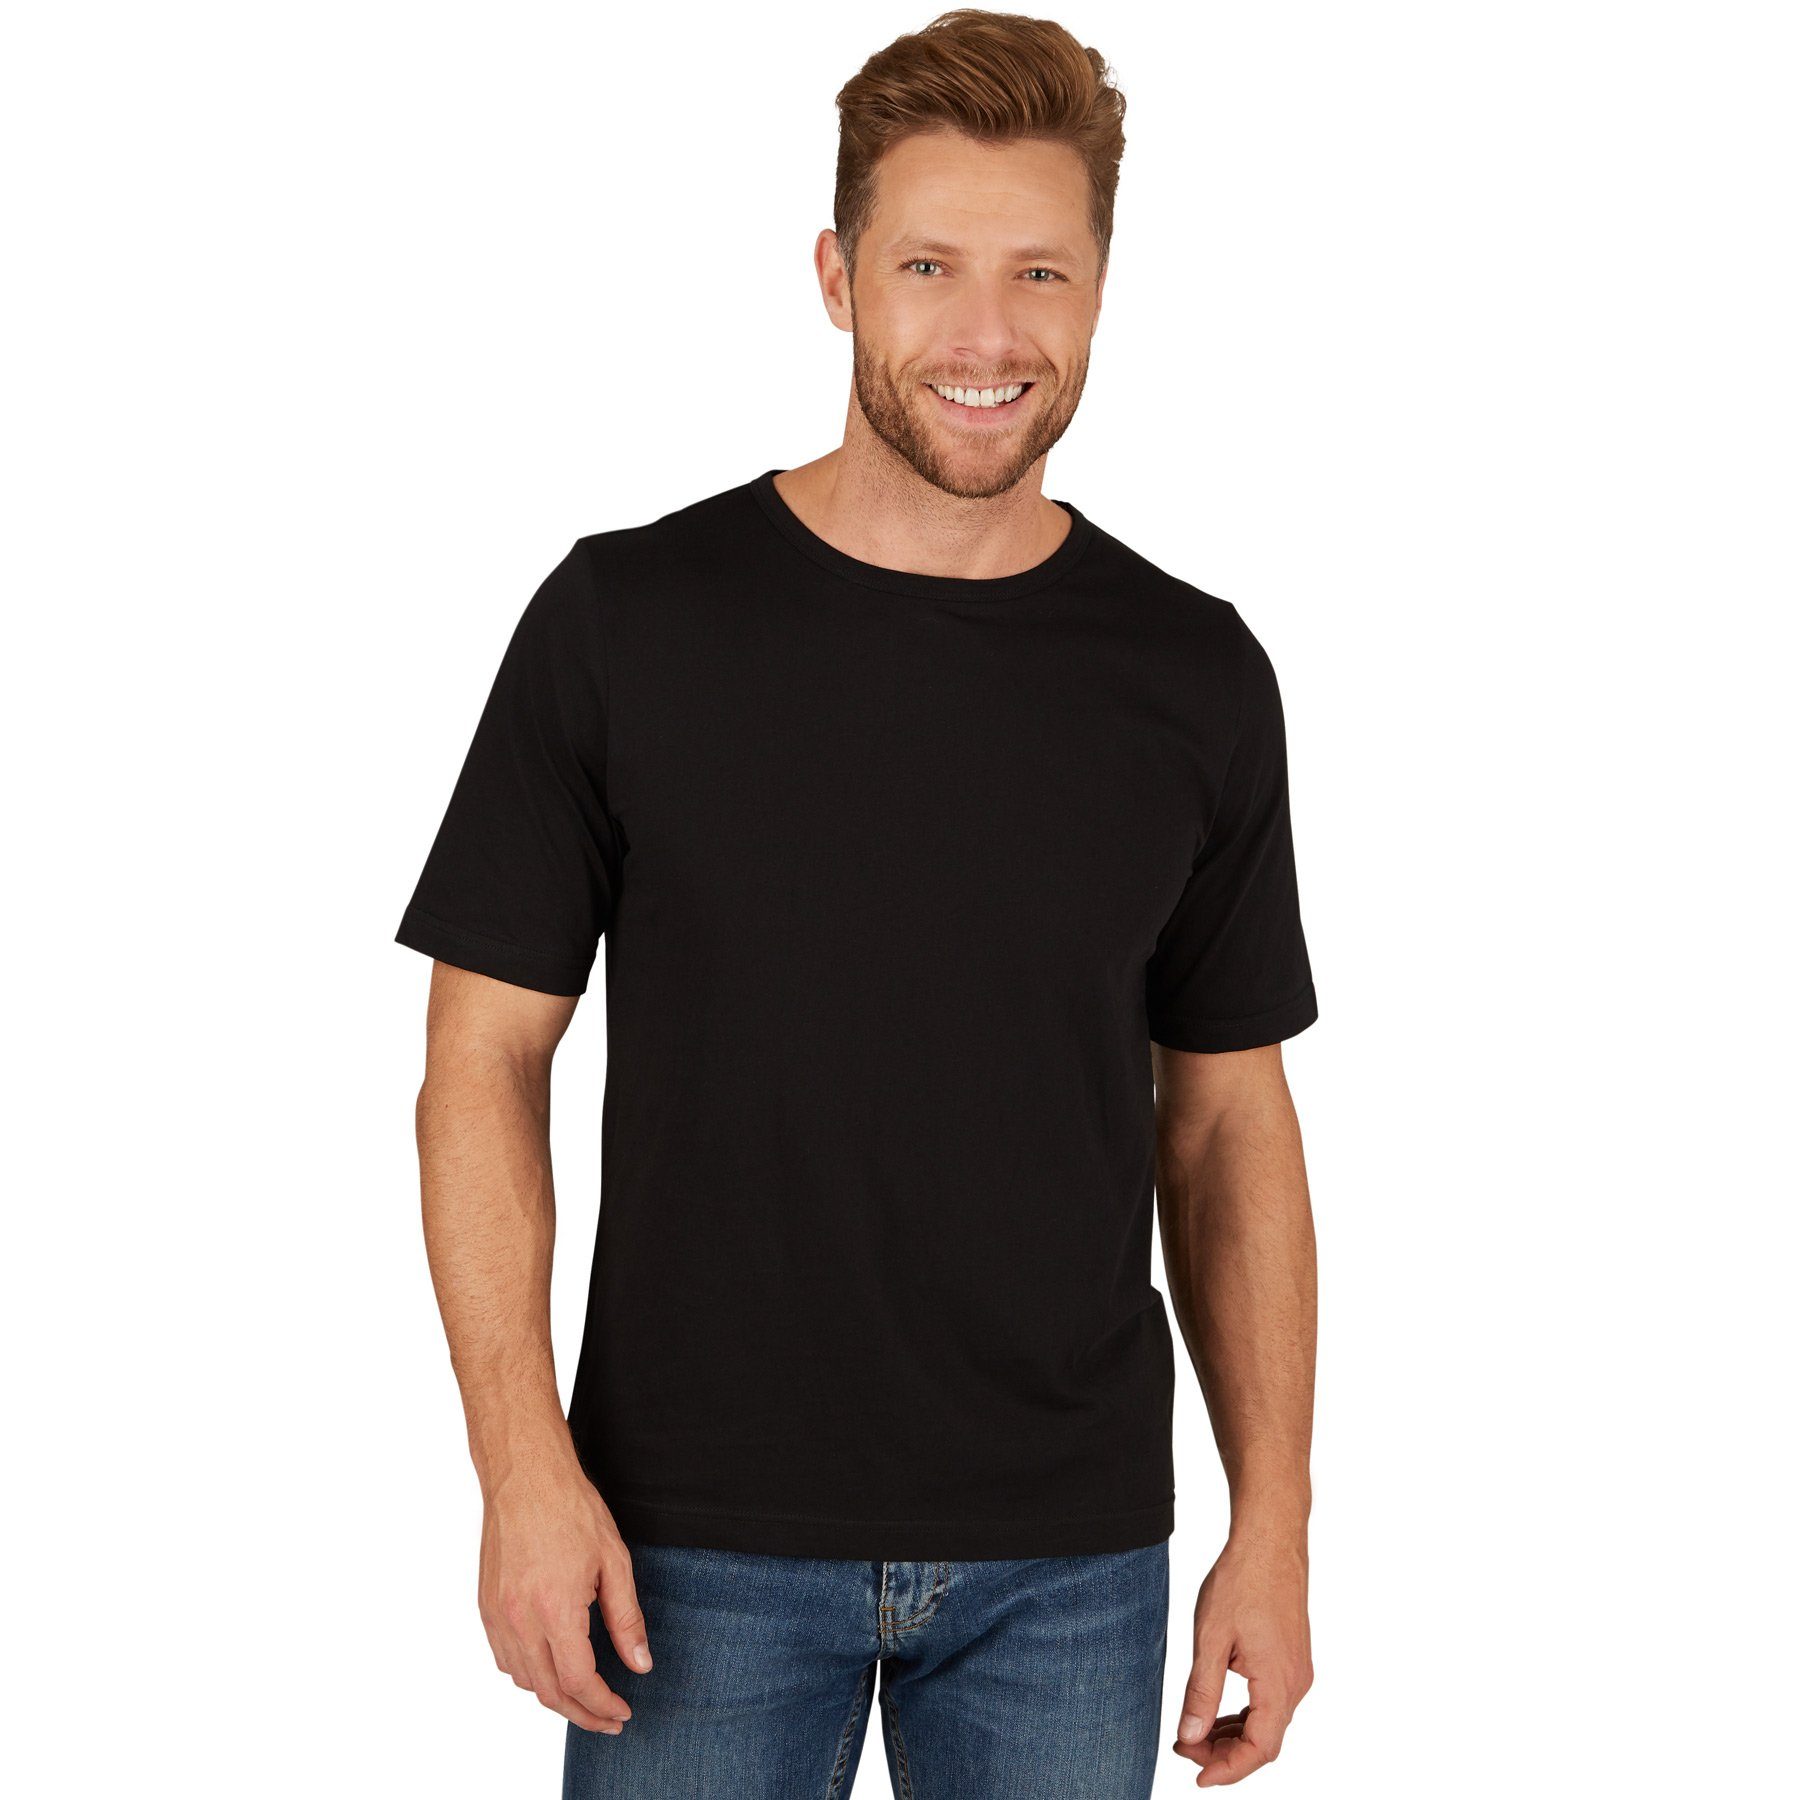 dressforfun T-Shirt Herren T-Shirt mit Rundhals-Ausschnitt Rundhals schwarz